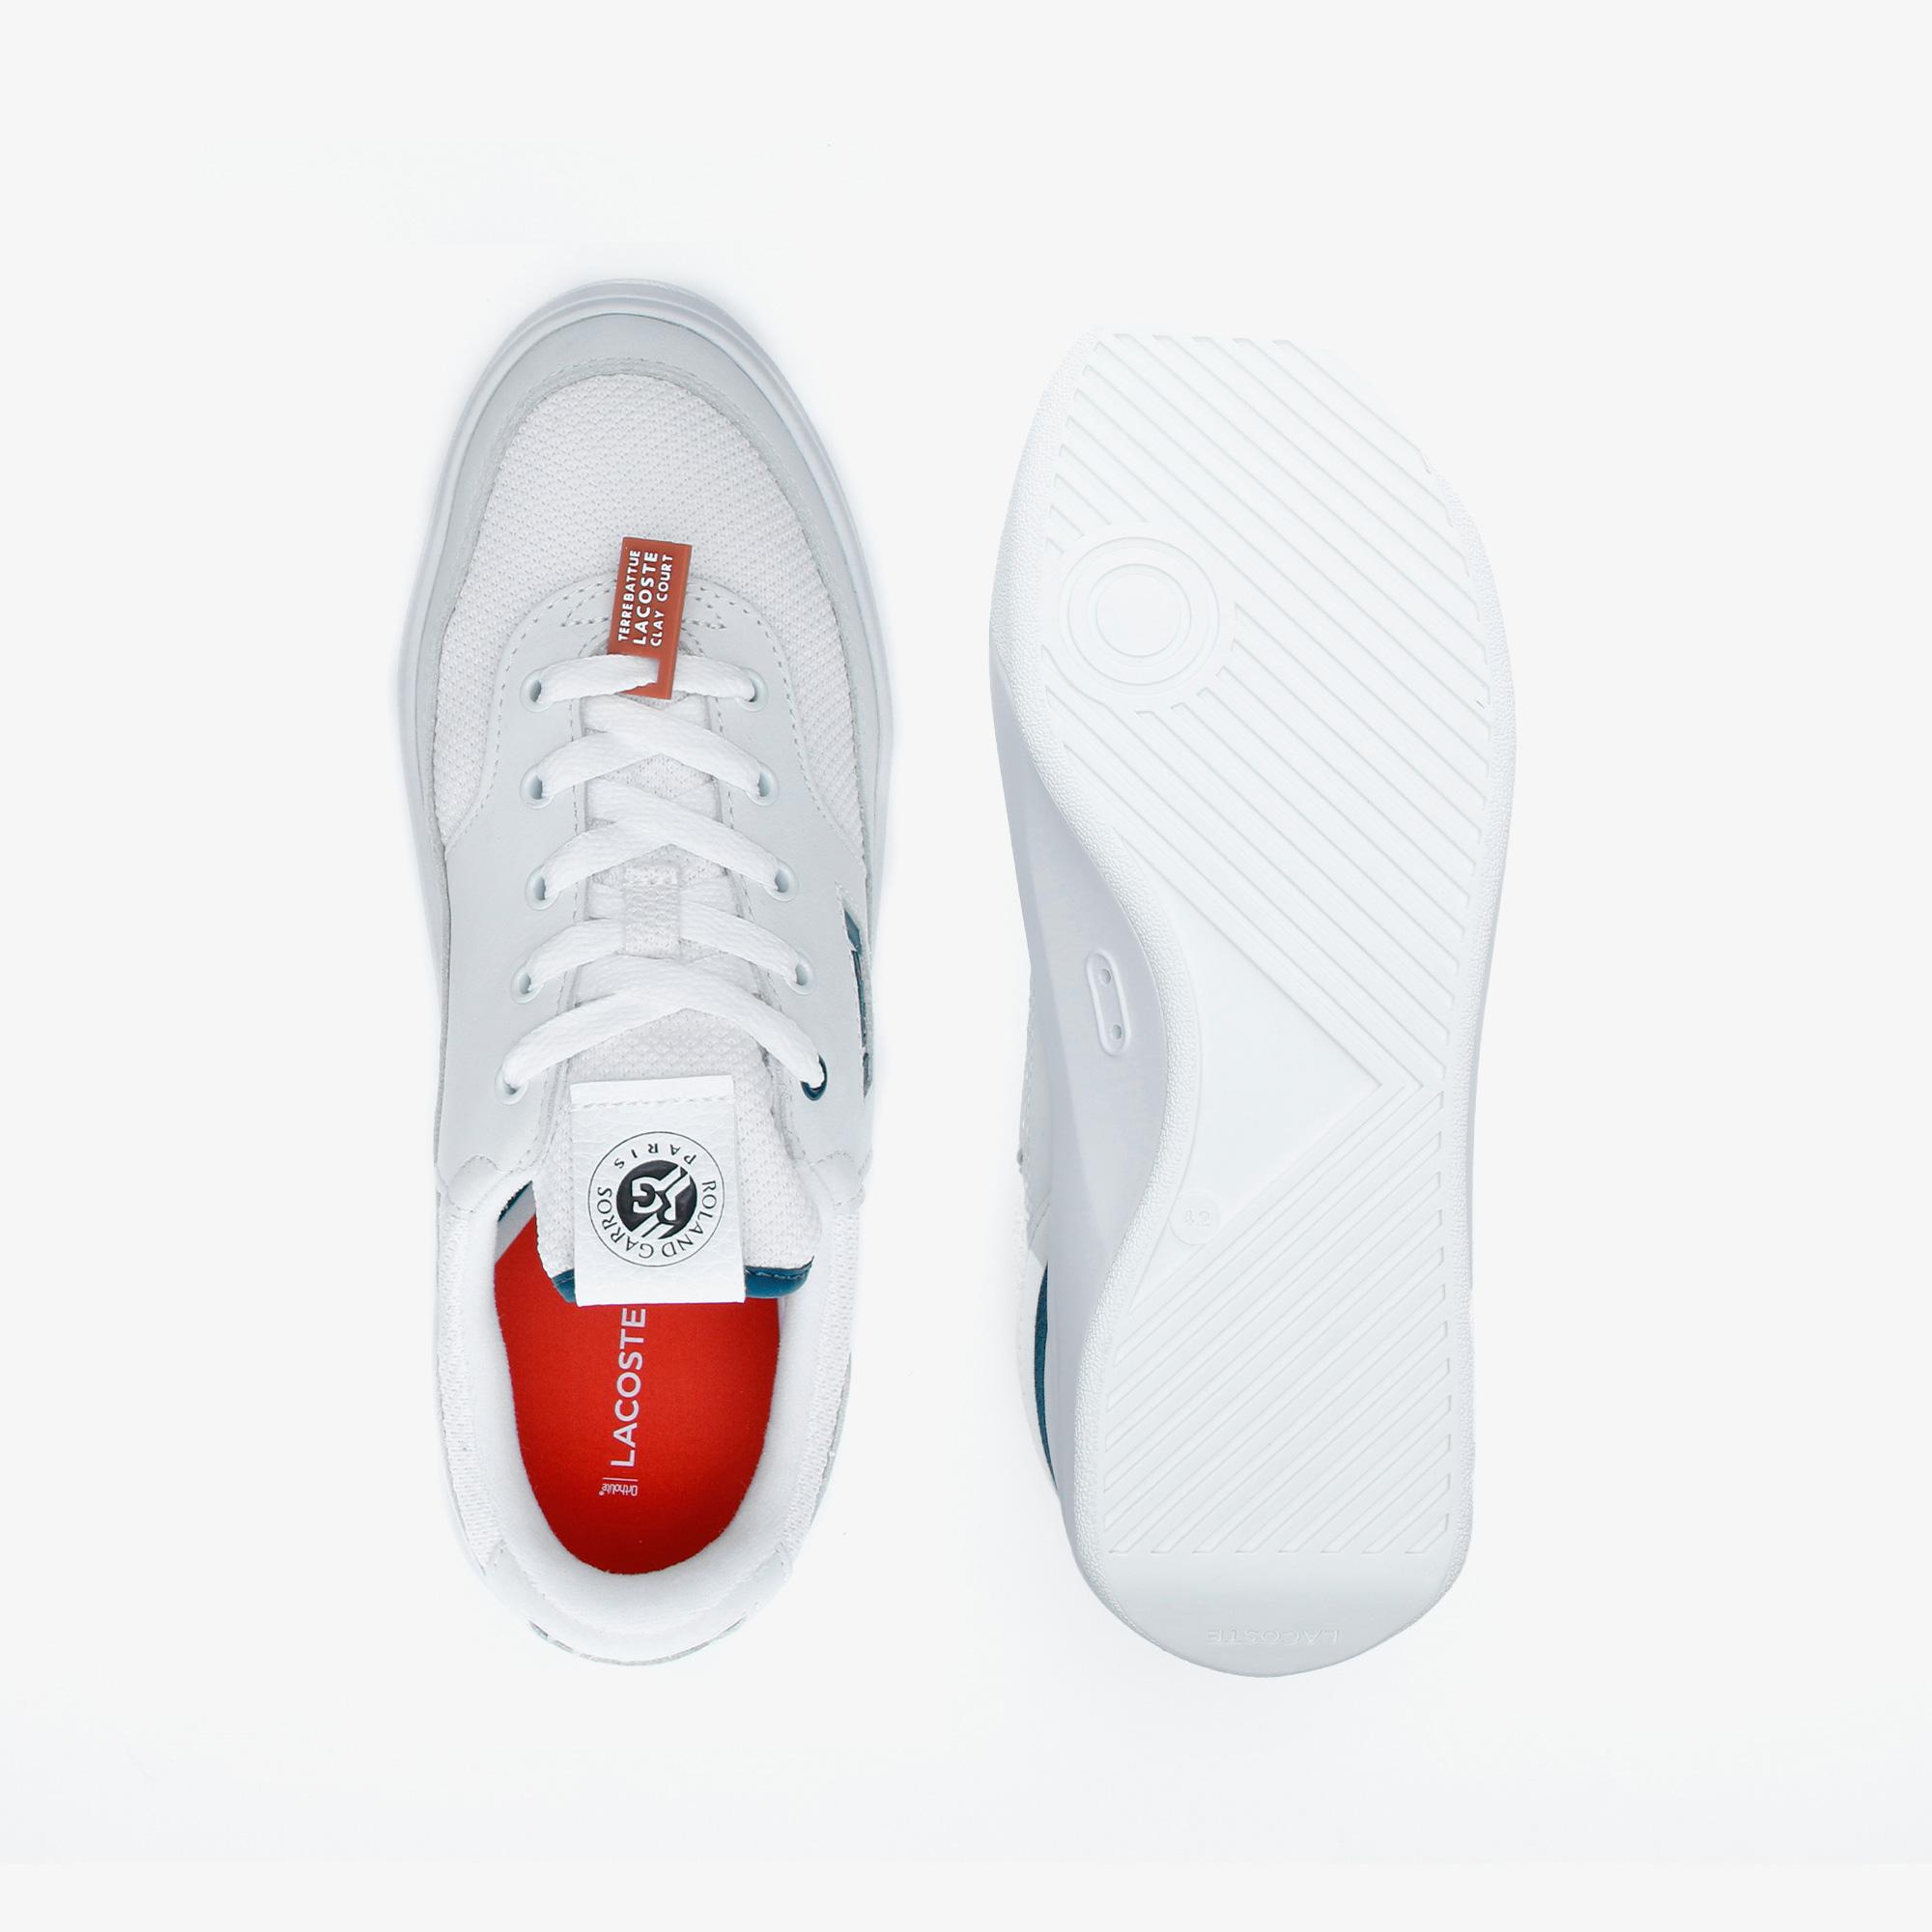 Lacoste G80 Rg 120 1 Sfa Wht/Dk Grn Kadın Beyaz - Koyu Yeşil Deri Sneaker. 5